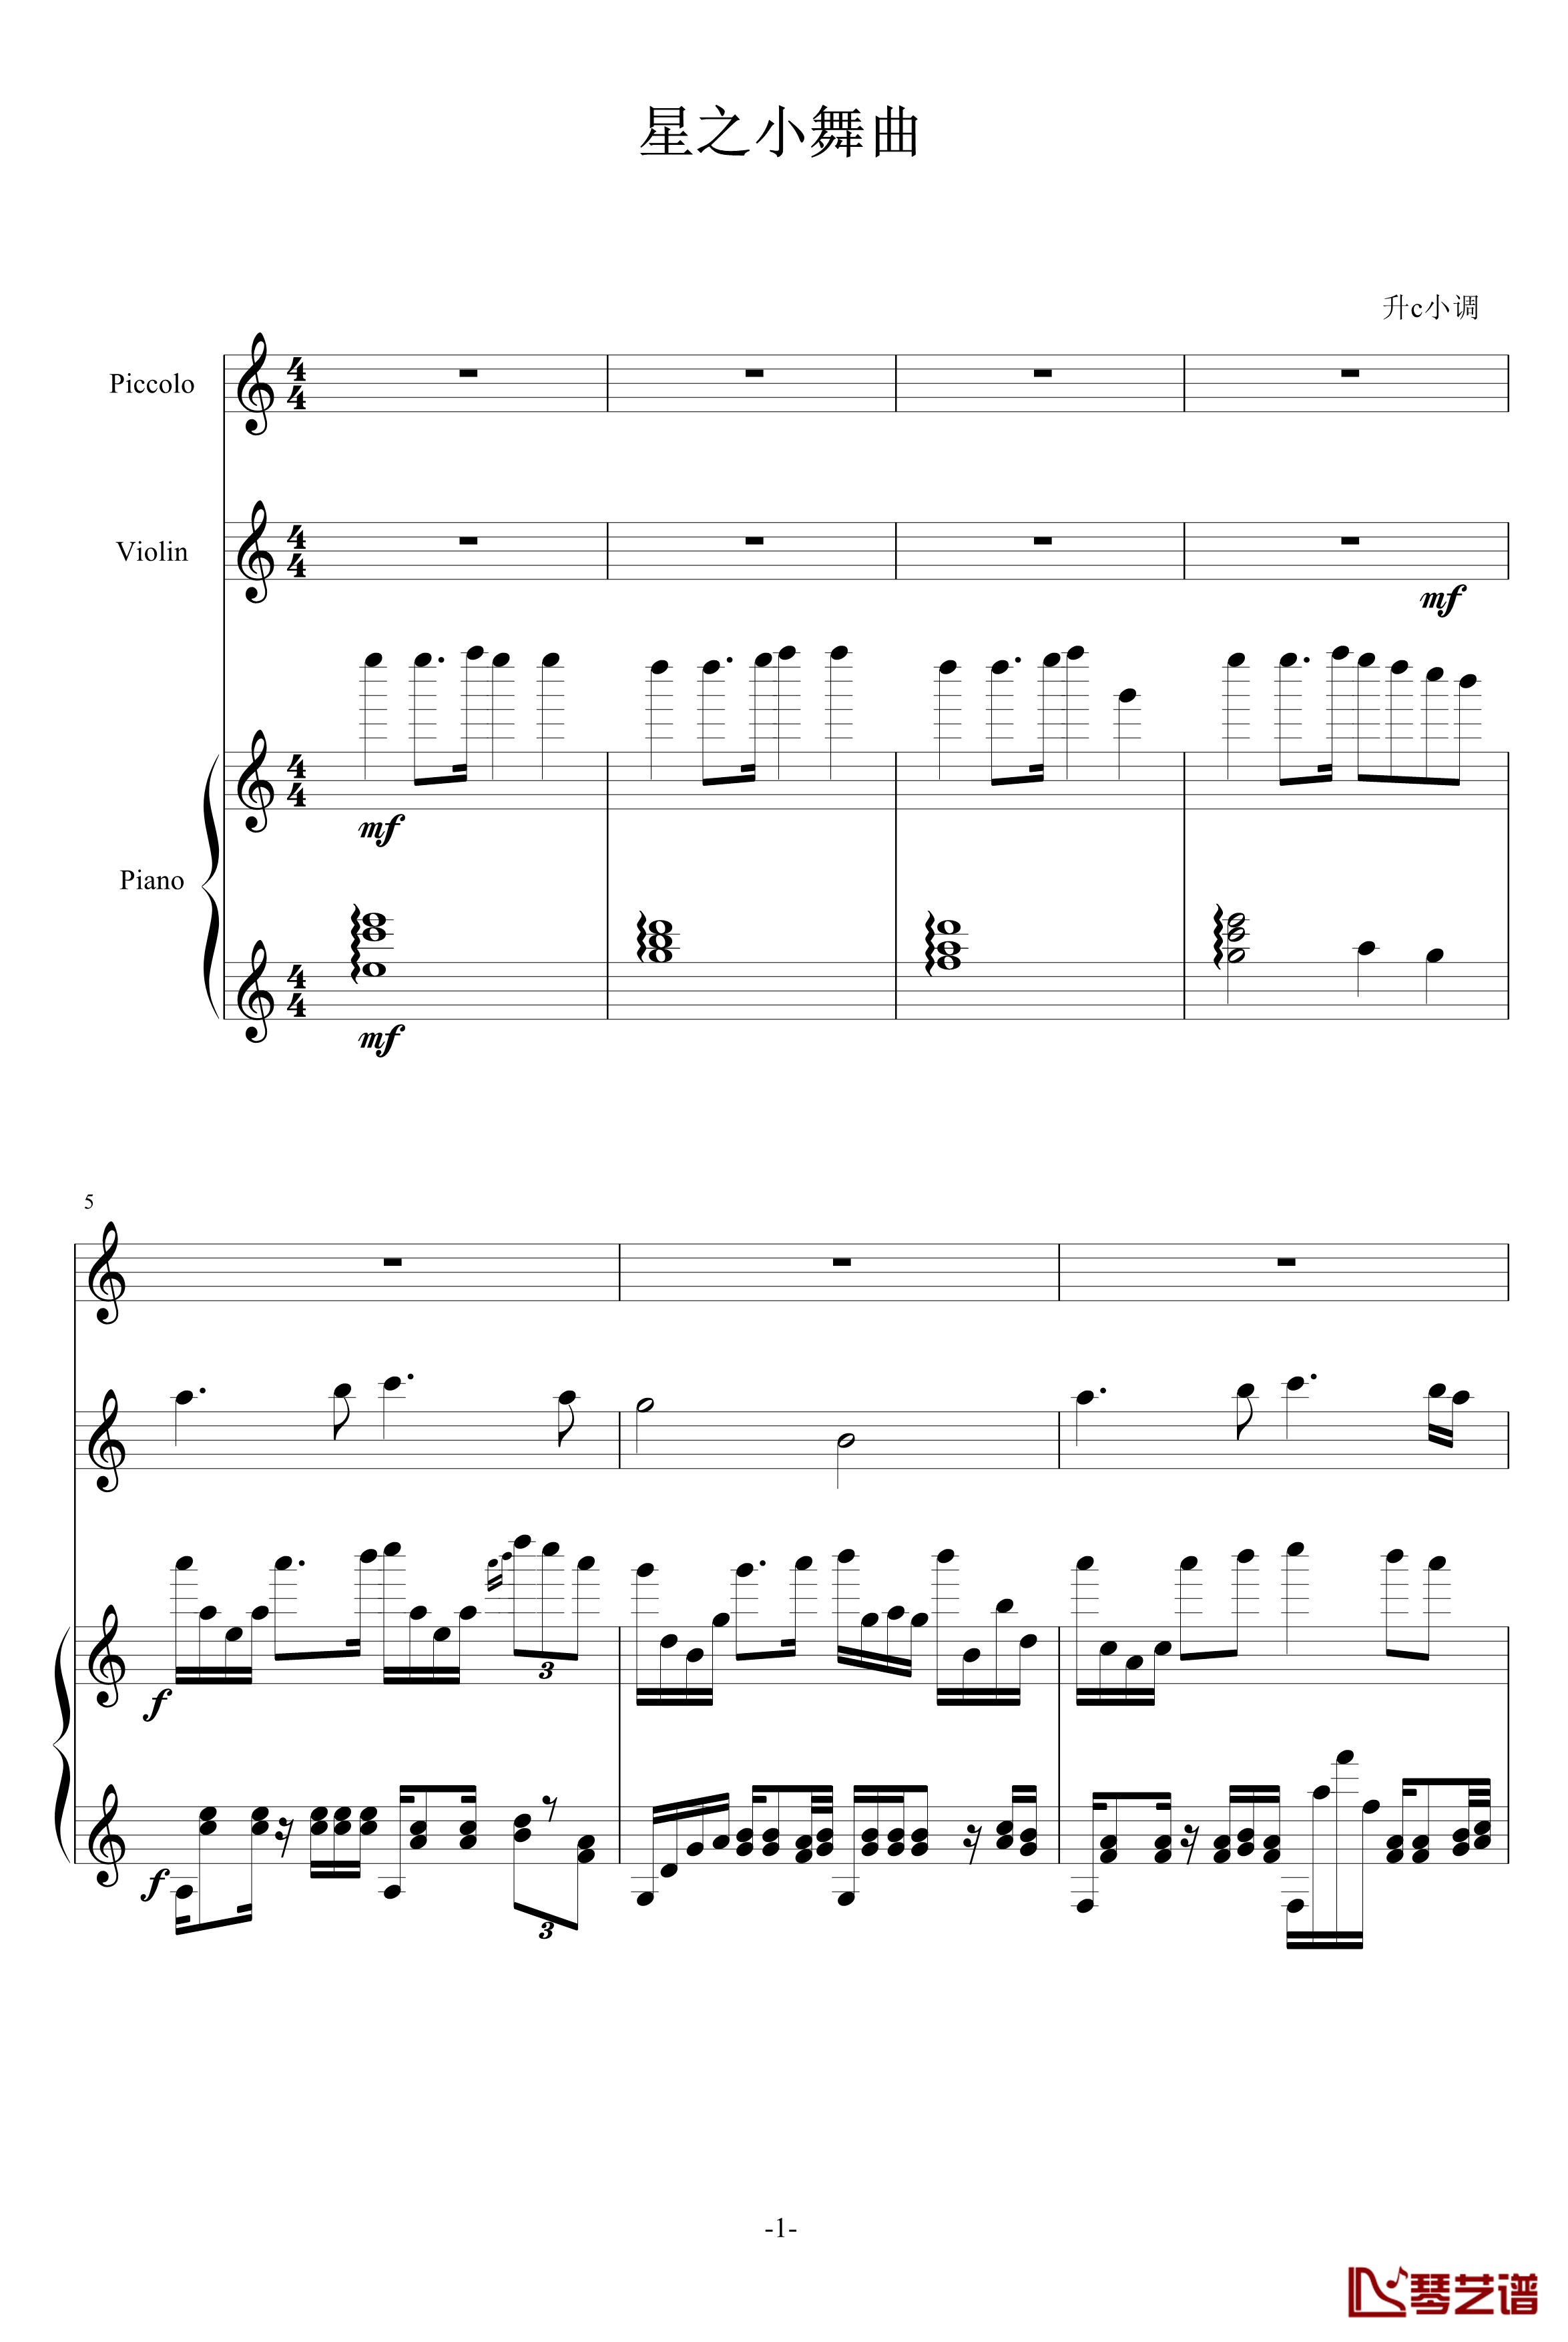 星之小舞曲钢琴谱-升c小调1